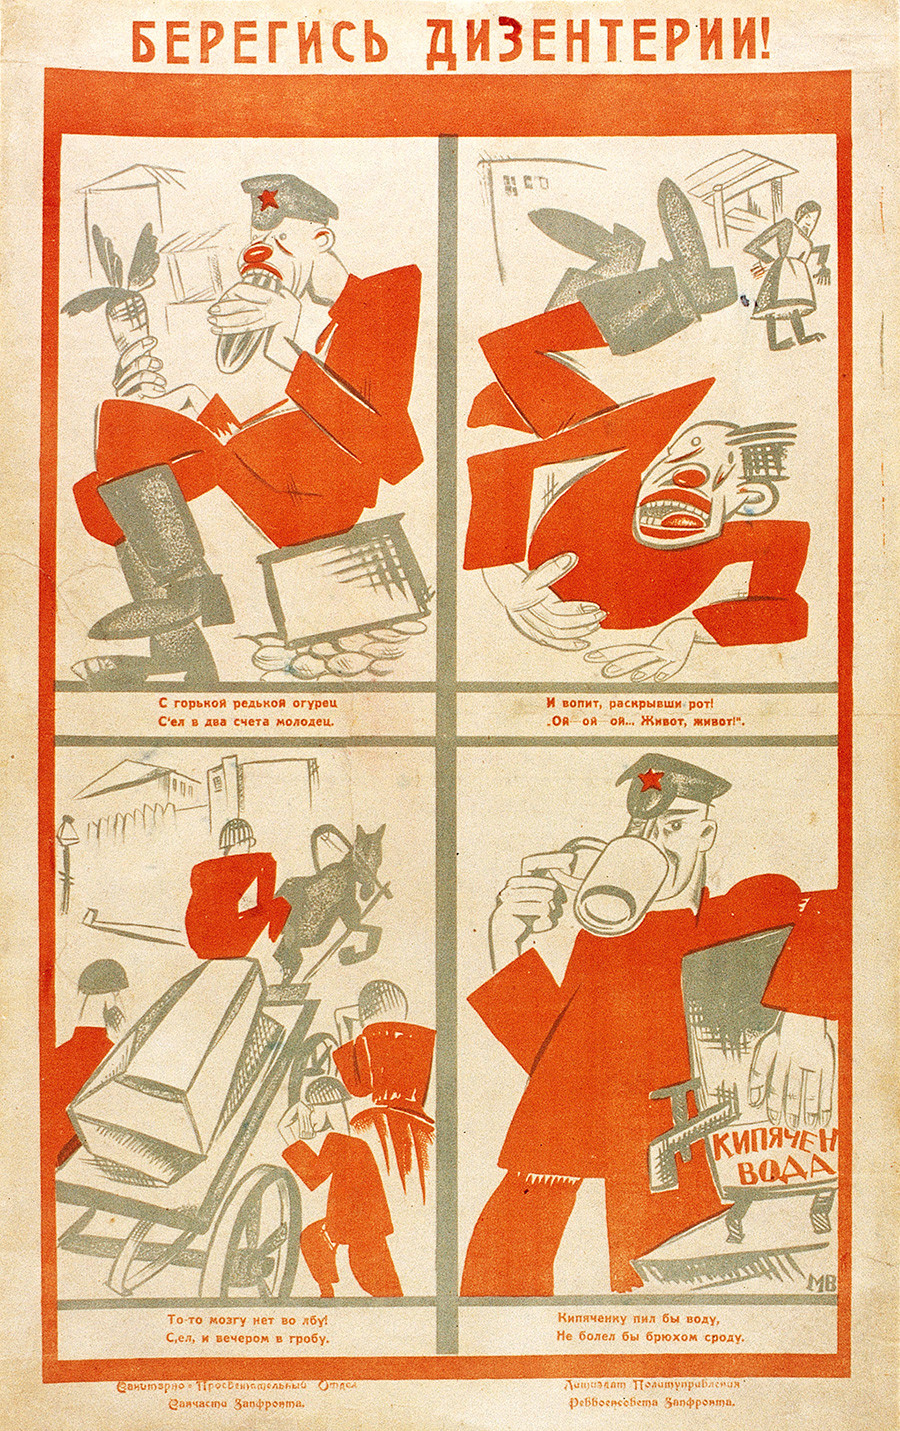 Наглядная медицина СССР: избранные советские плакаты о здоровье меньше, царил, болеет, советскому, государству, Поэтому, профилактика, заболеваний, считалась, важнейшим, направлением, людей, врачей, влетала, больниц, лекарствА, значит, лучше, вообще, болеть